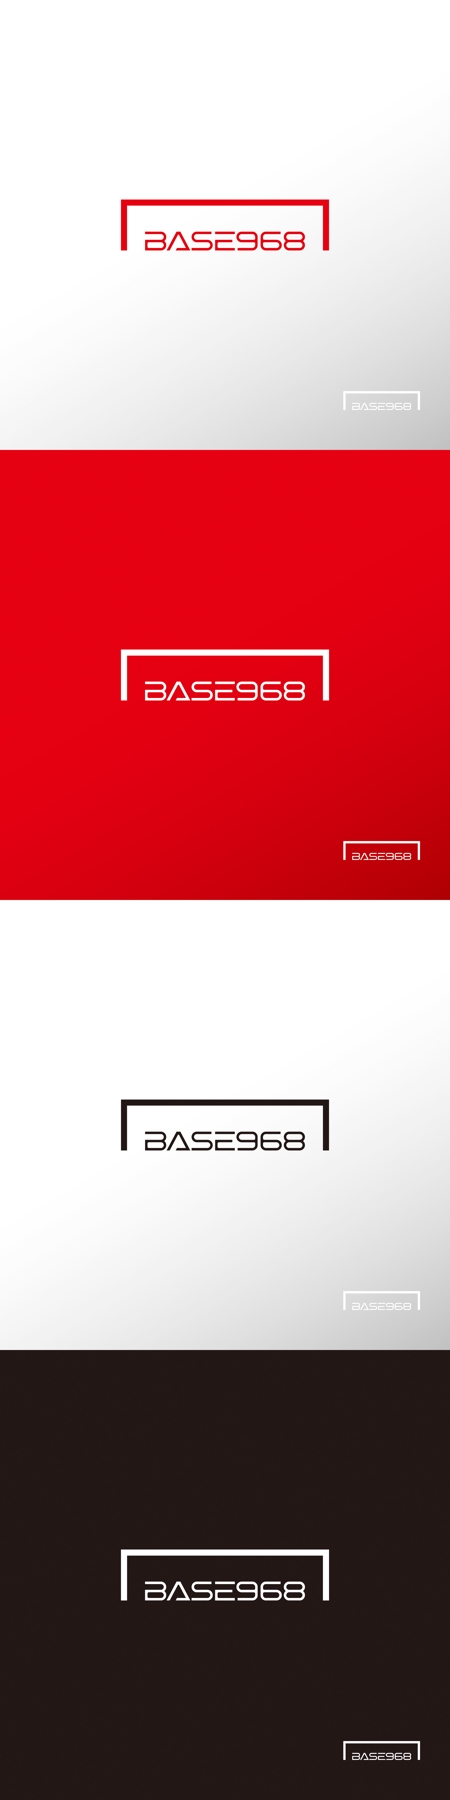 doremi (doremidesign)さんの地域の一人ひとりが暮らしを創る仕掛けを生み出す団体「BASE968」の新規ロゴへの提案